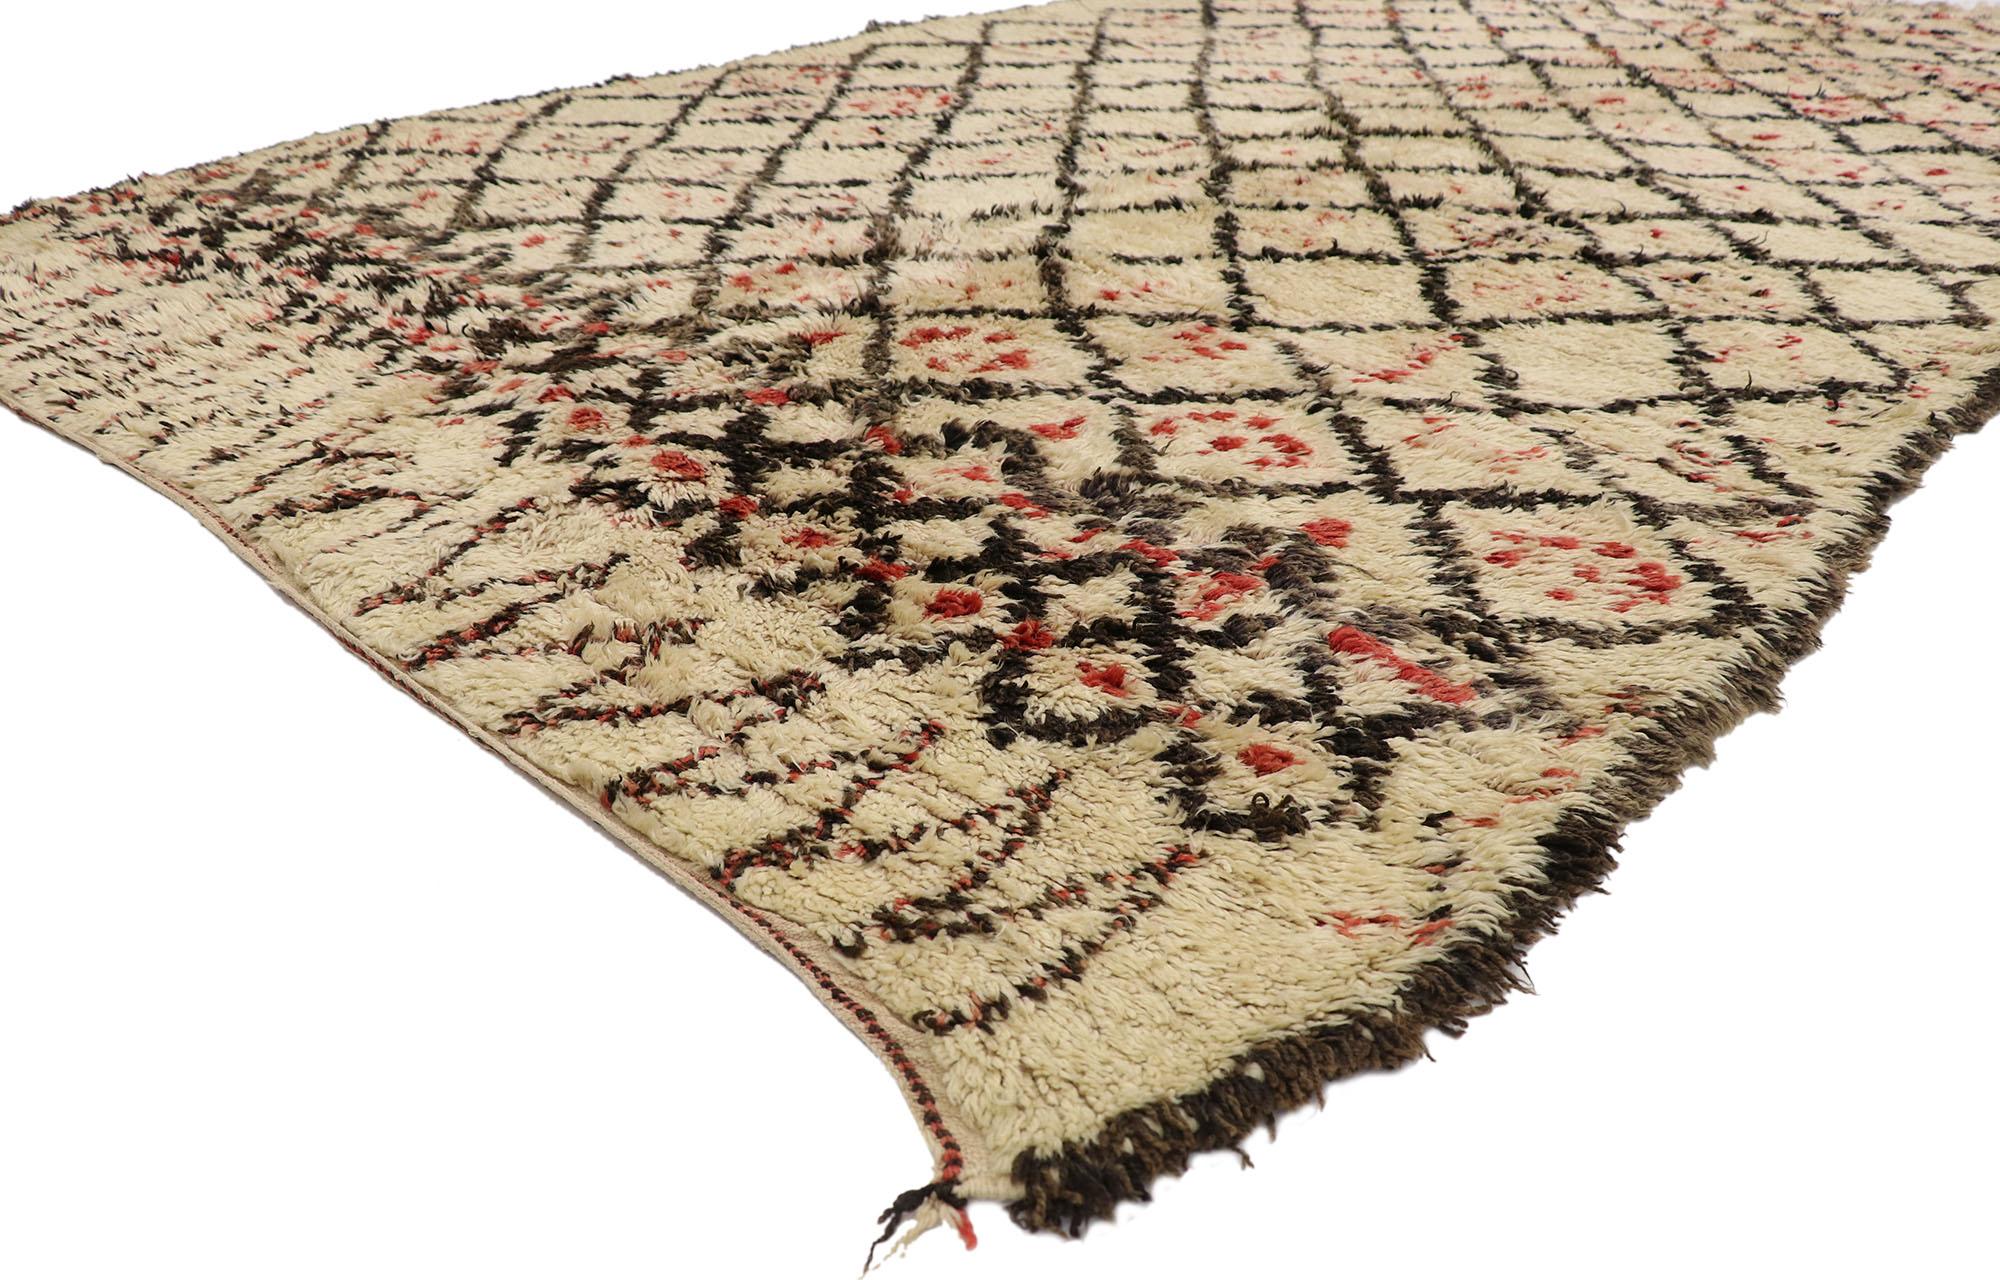 21394 Marokkanischer Vintage-Teppich Beni Ourain, 06'06 x 11'02. Dieser handgeknüpfte marokkanische Beni Ourain-Teppich aus Wolle versprüht nomadischen Charme mit unglaublichen Details und Texturen und ist eine fesselnde Vision gewebter Schönheit.